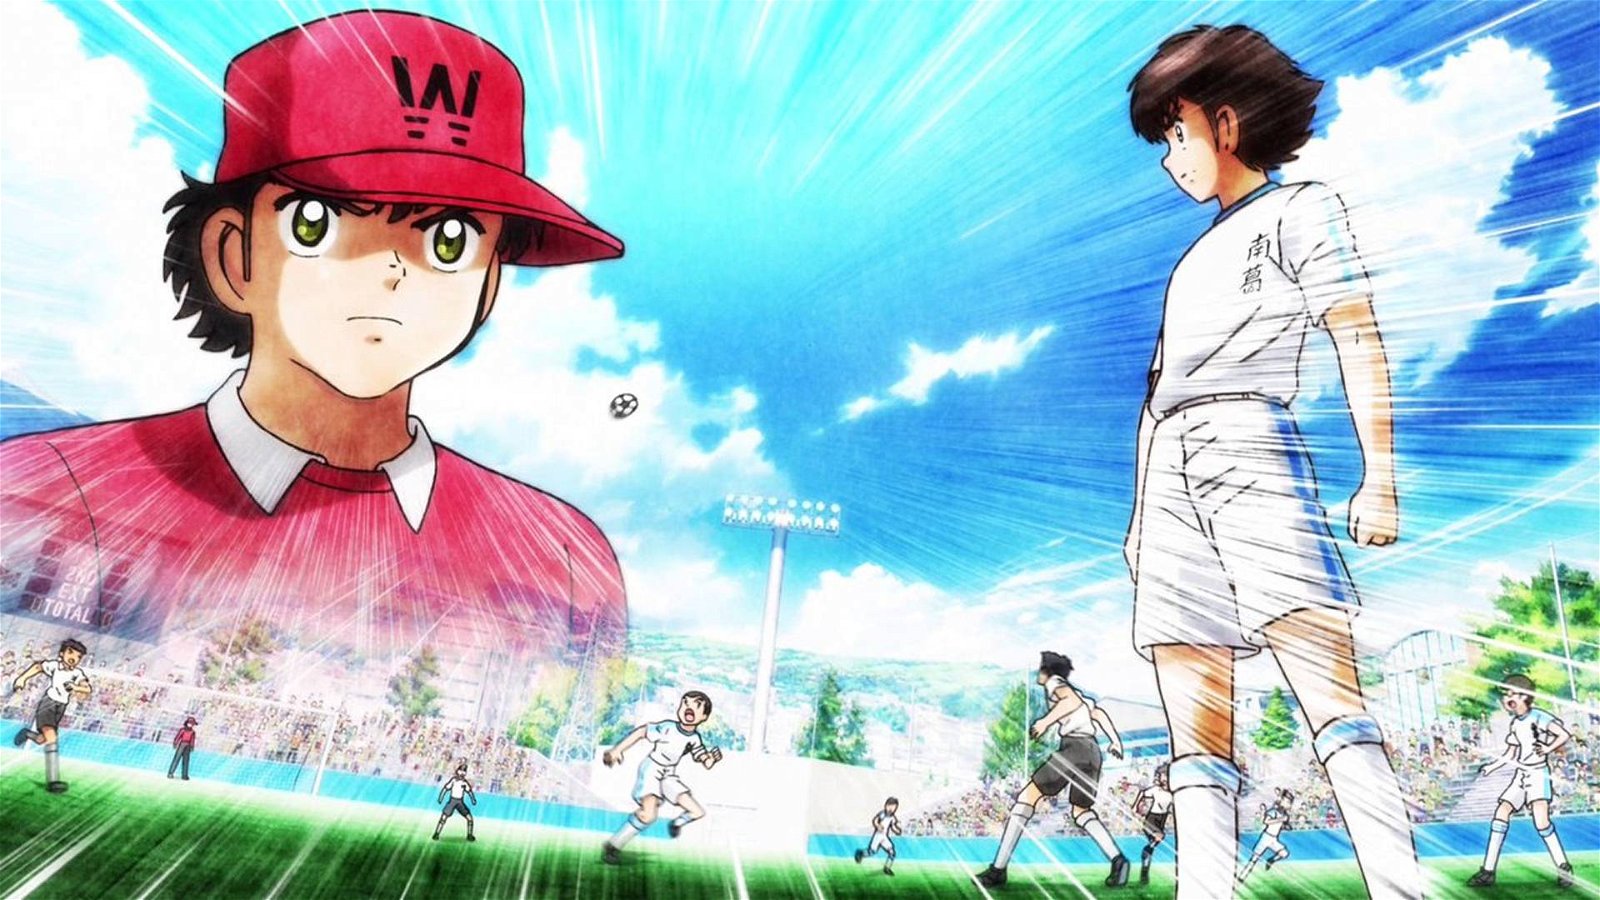 Immagine di Captain Tsubasa: il calciatore Nagatomo comparirà in un episodio speciale